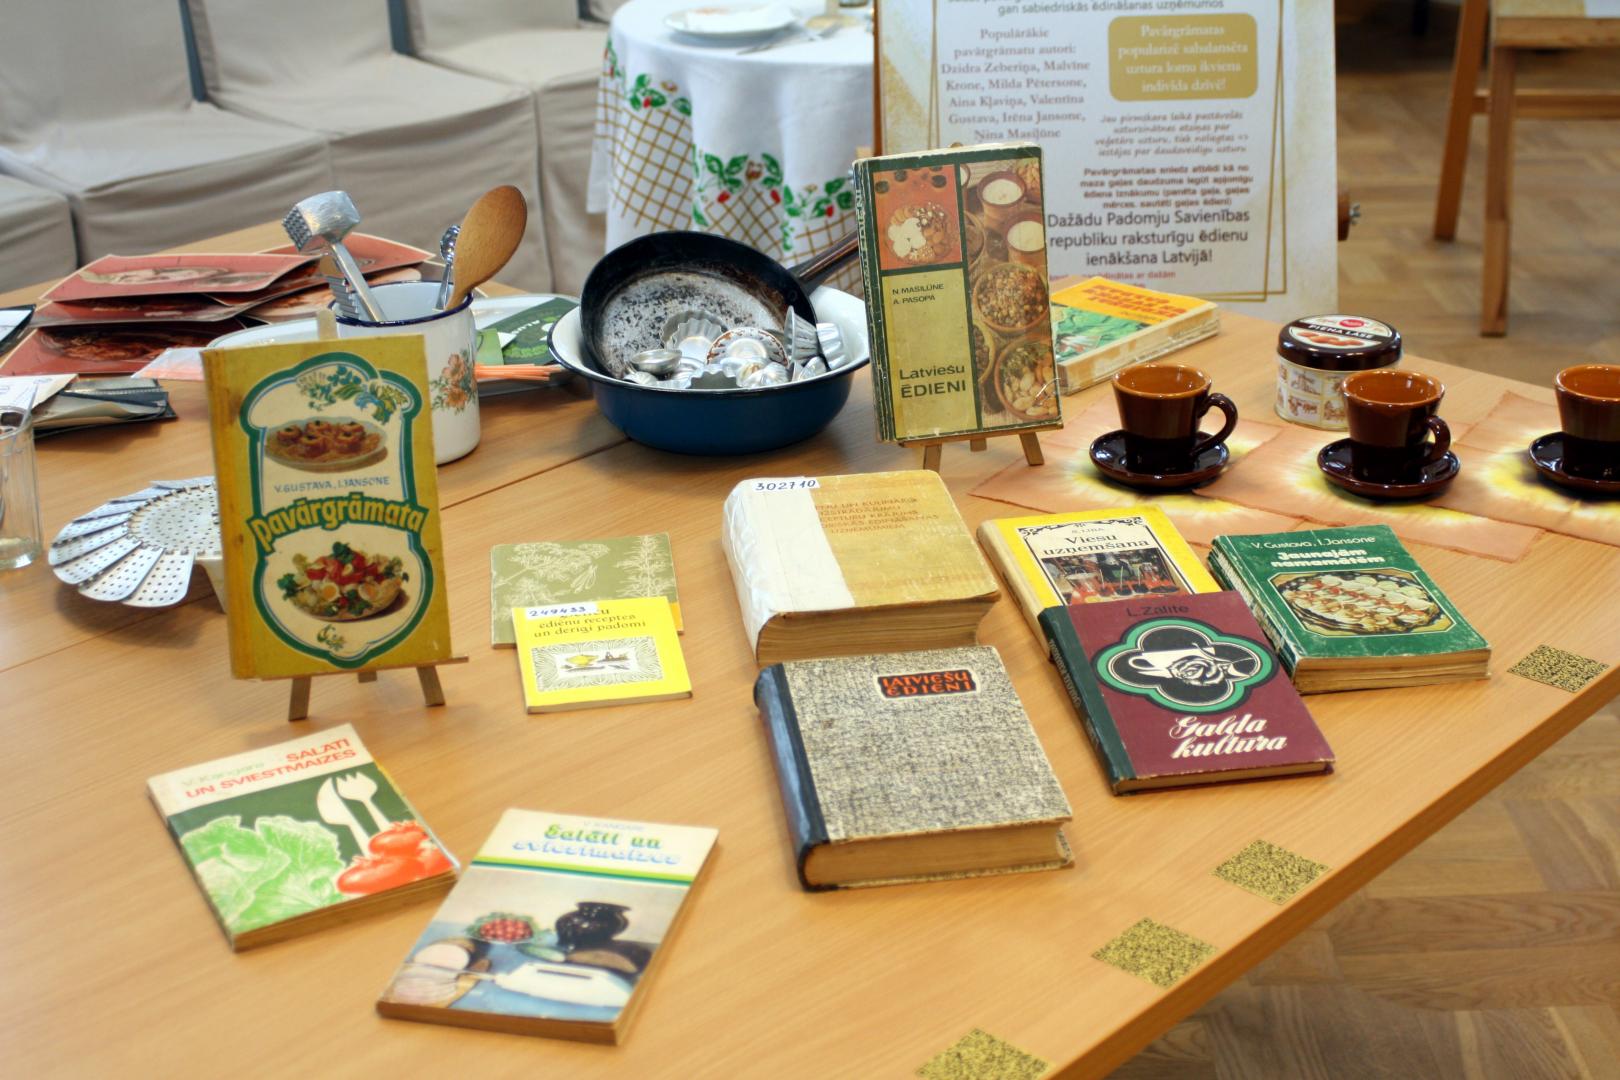 Atklāšanas pasākums Jelgavā pirmajai publicētajai pavārgrāmatai